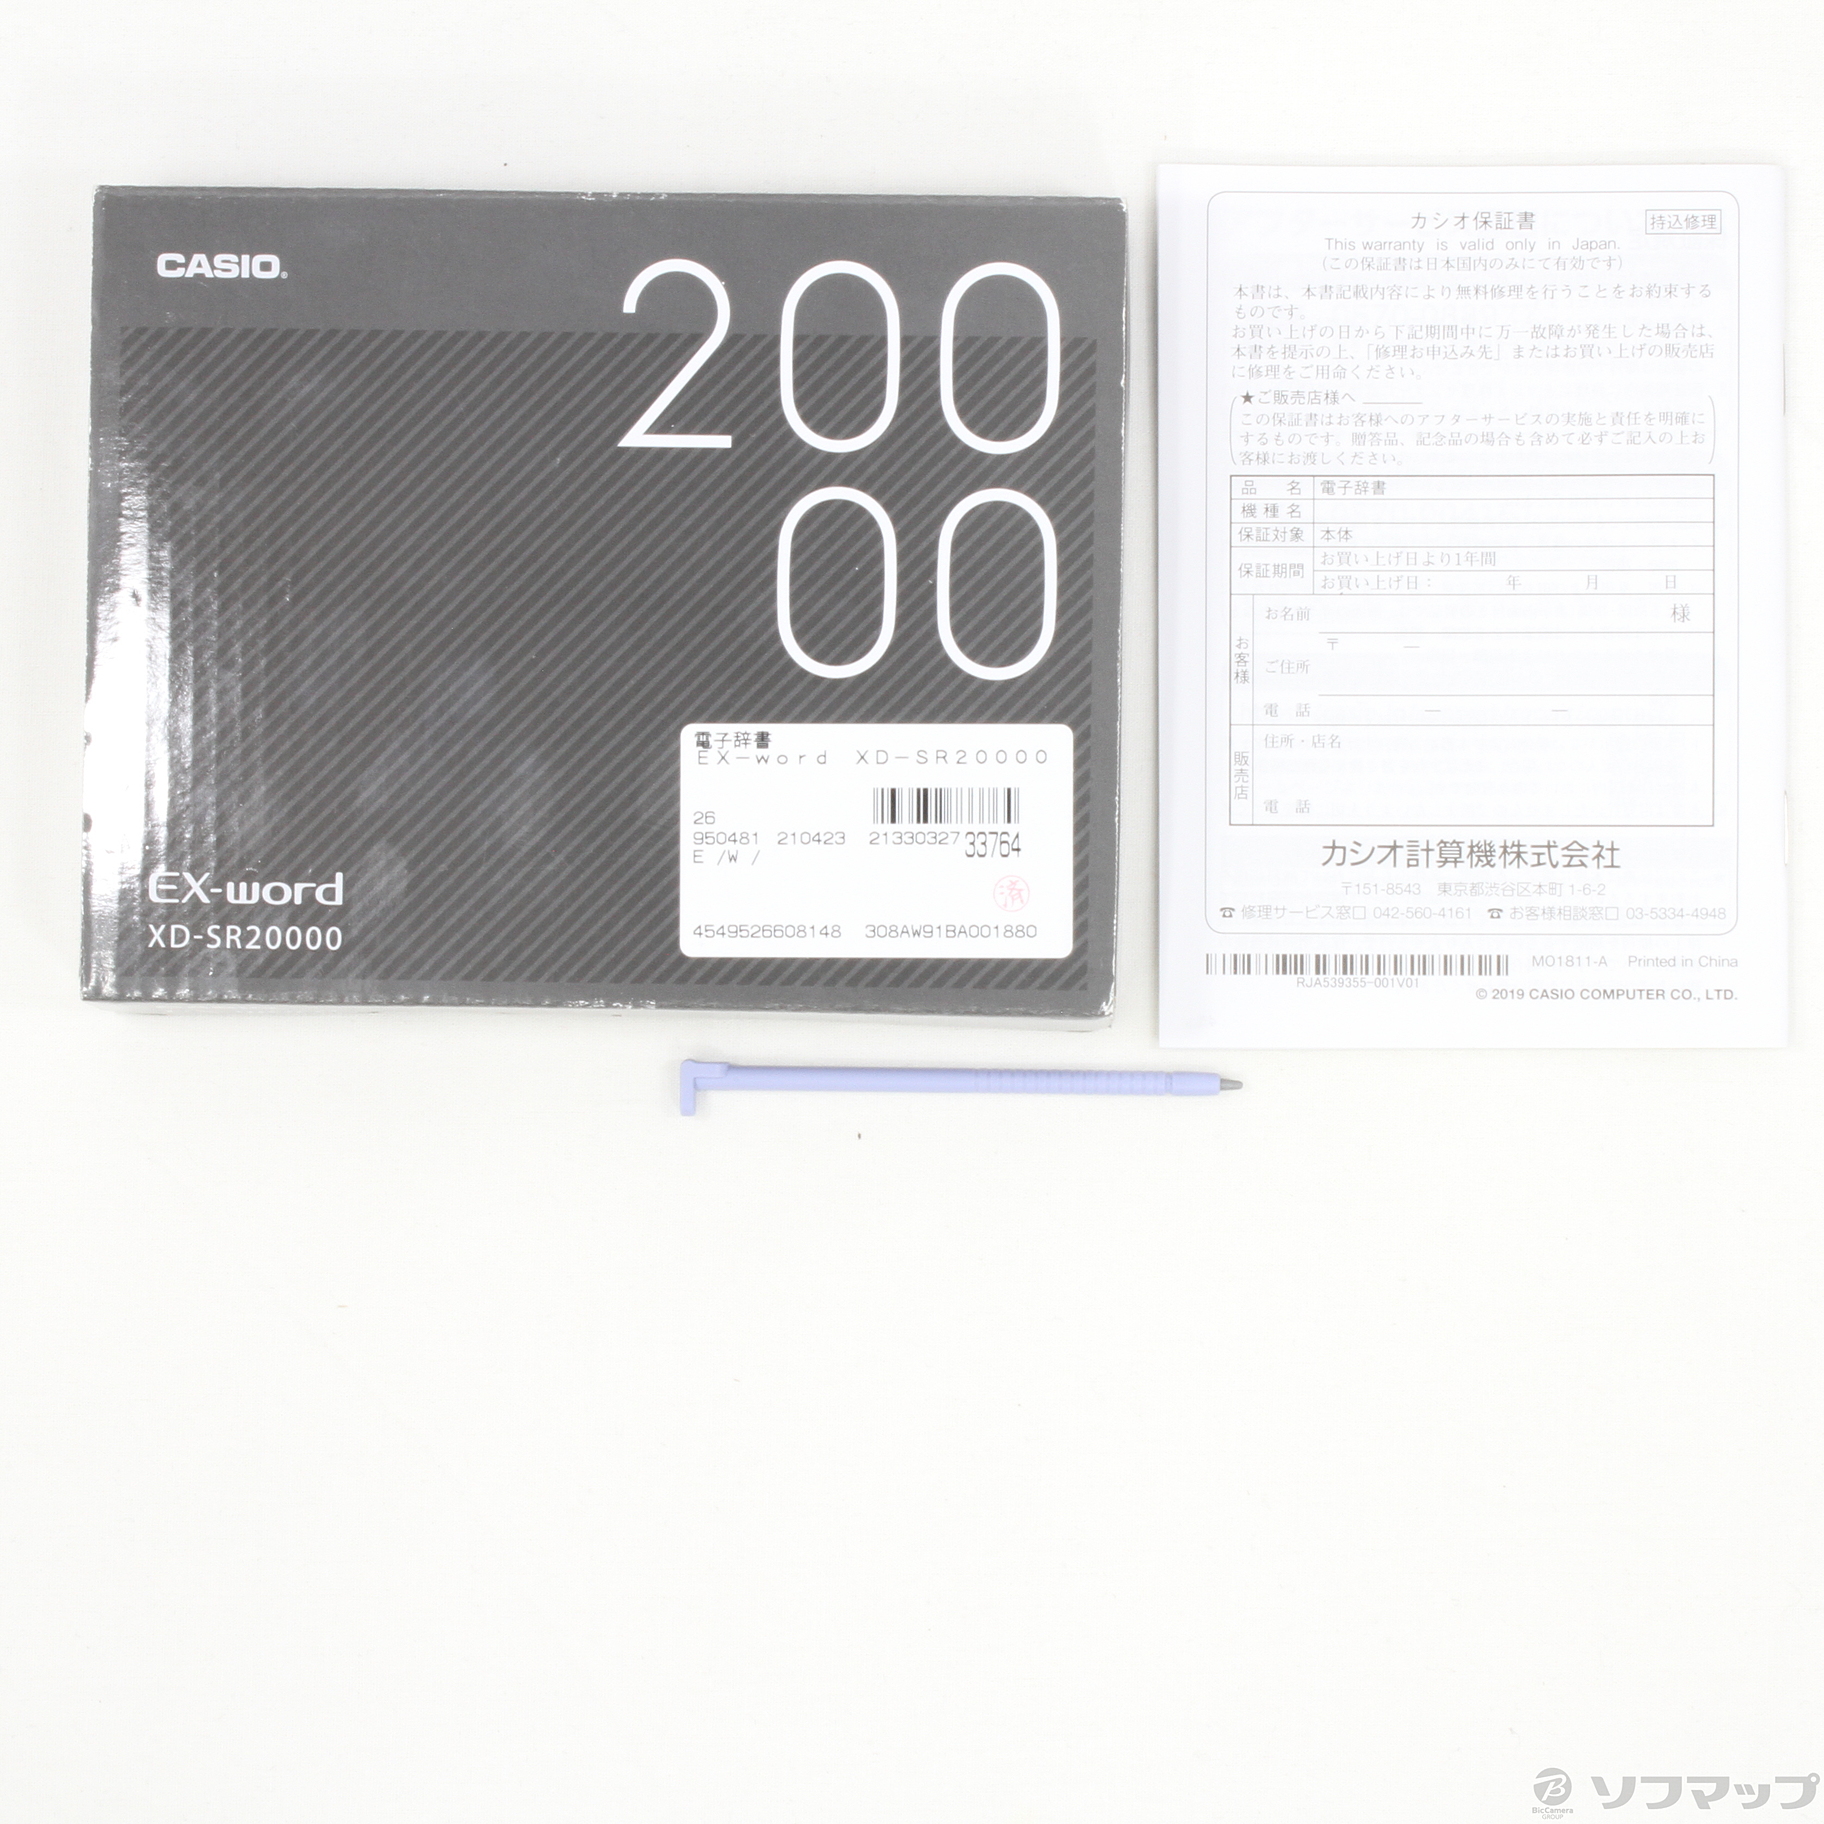 カシオ CASIO 電子辞書 エクスワード プロッフェッショナルモデル XD-SR20000 200コンテンツ - 3